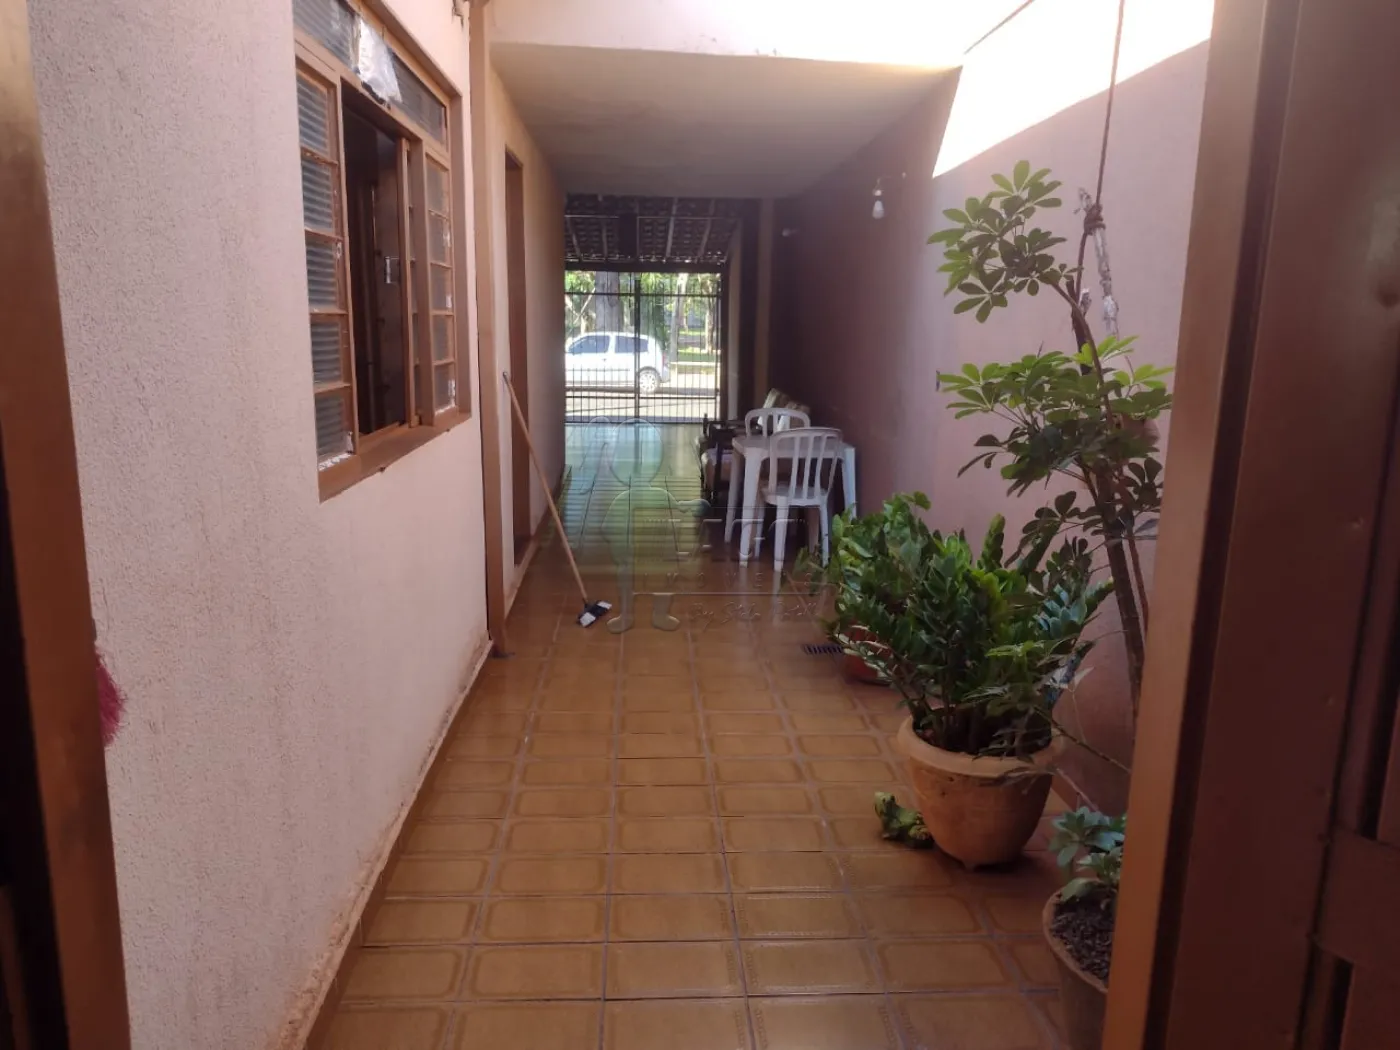 Comprar Casa / Padrão em Ribeirão Preto R$ 300.000,00 - Foto 14